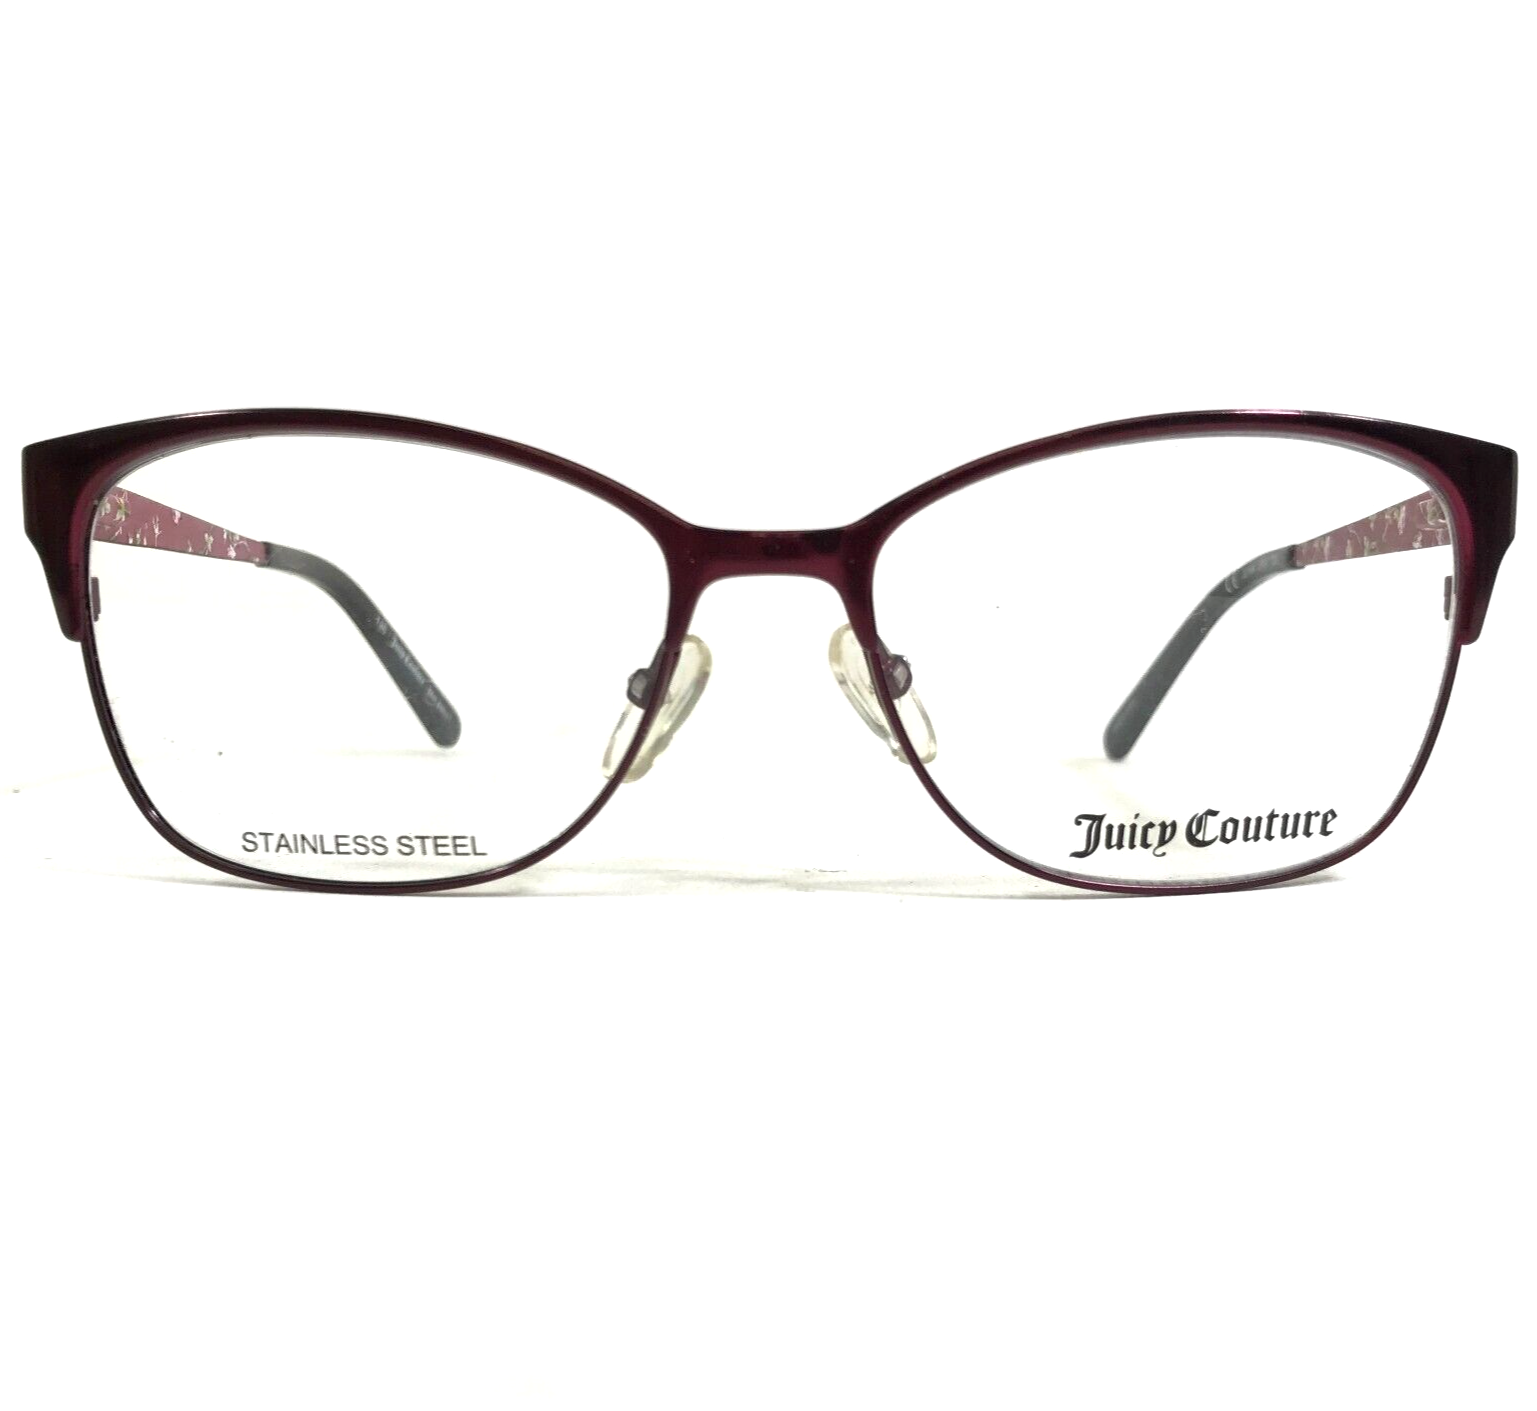 Juicy Couture Eyeglasses Frames JU144 0RV7 Burgundy Red Cat Eye 52-16-135 - $65.24